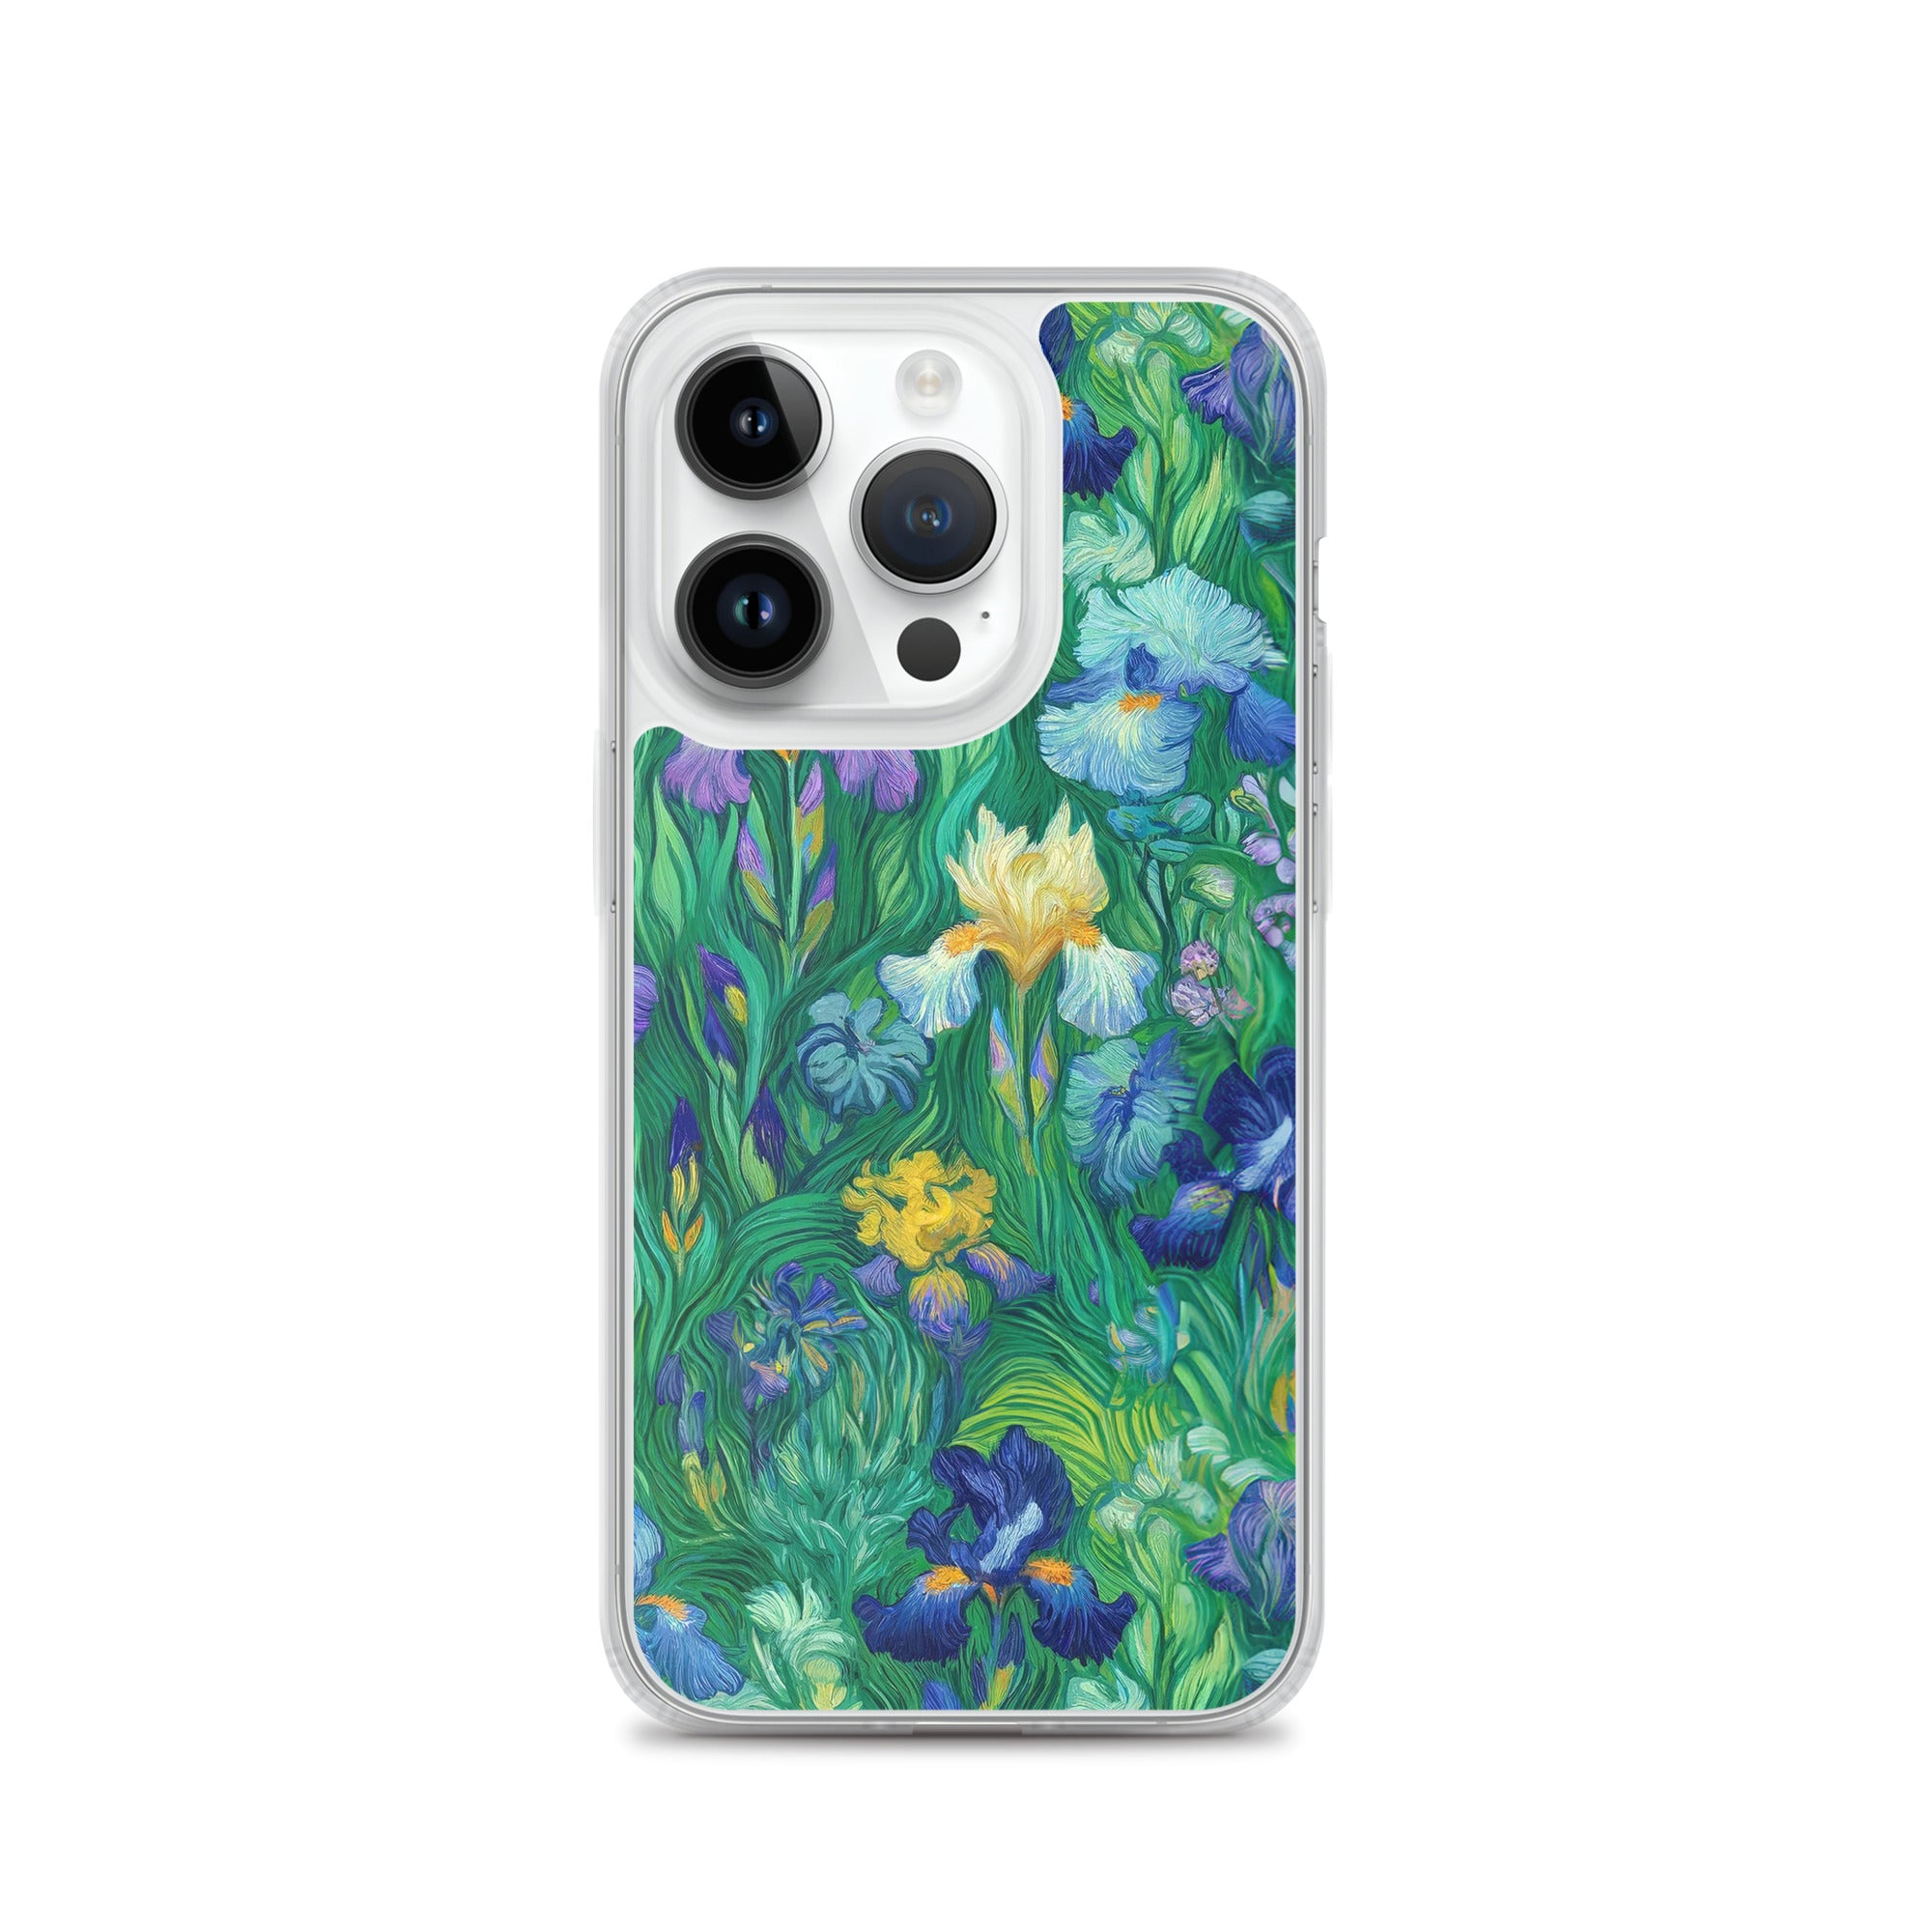 iPhone®-Hülle „Schwertlilien“ von Vincent van Gogh, berühmtes Gemälde | Transparente Kunsthülle für iPhone®